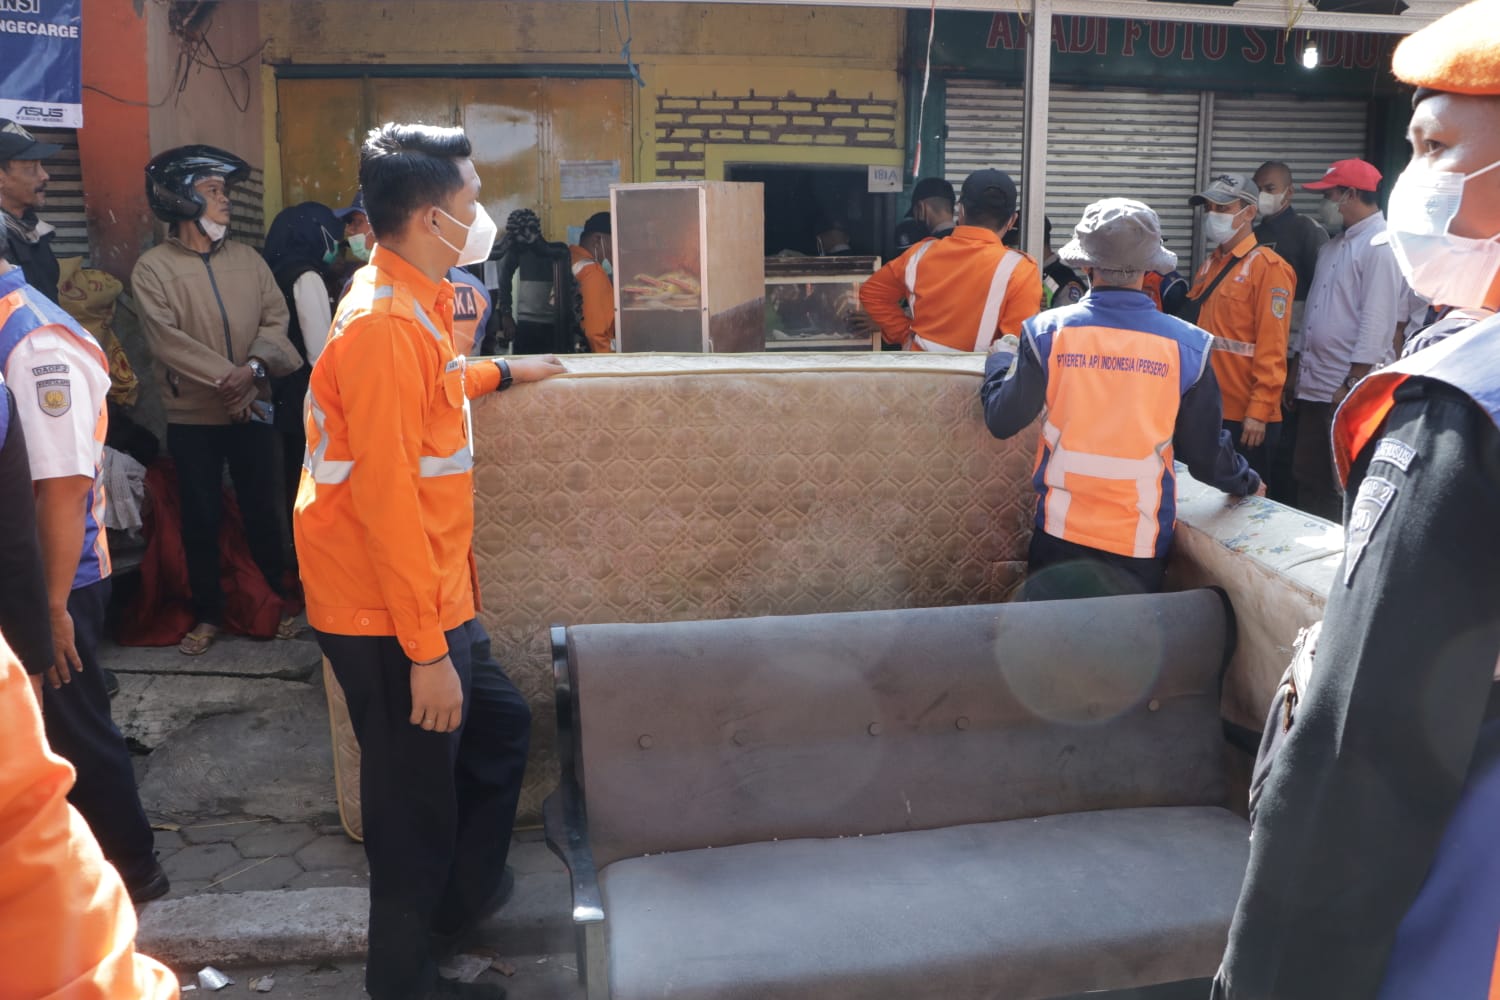 KAI Daop 2 Bandung Lakukan Penertiban Aset Perusahaan di Jalan Babakan Sari Bandung